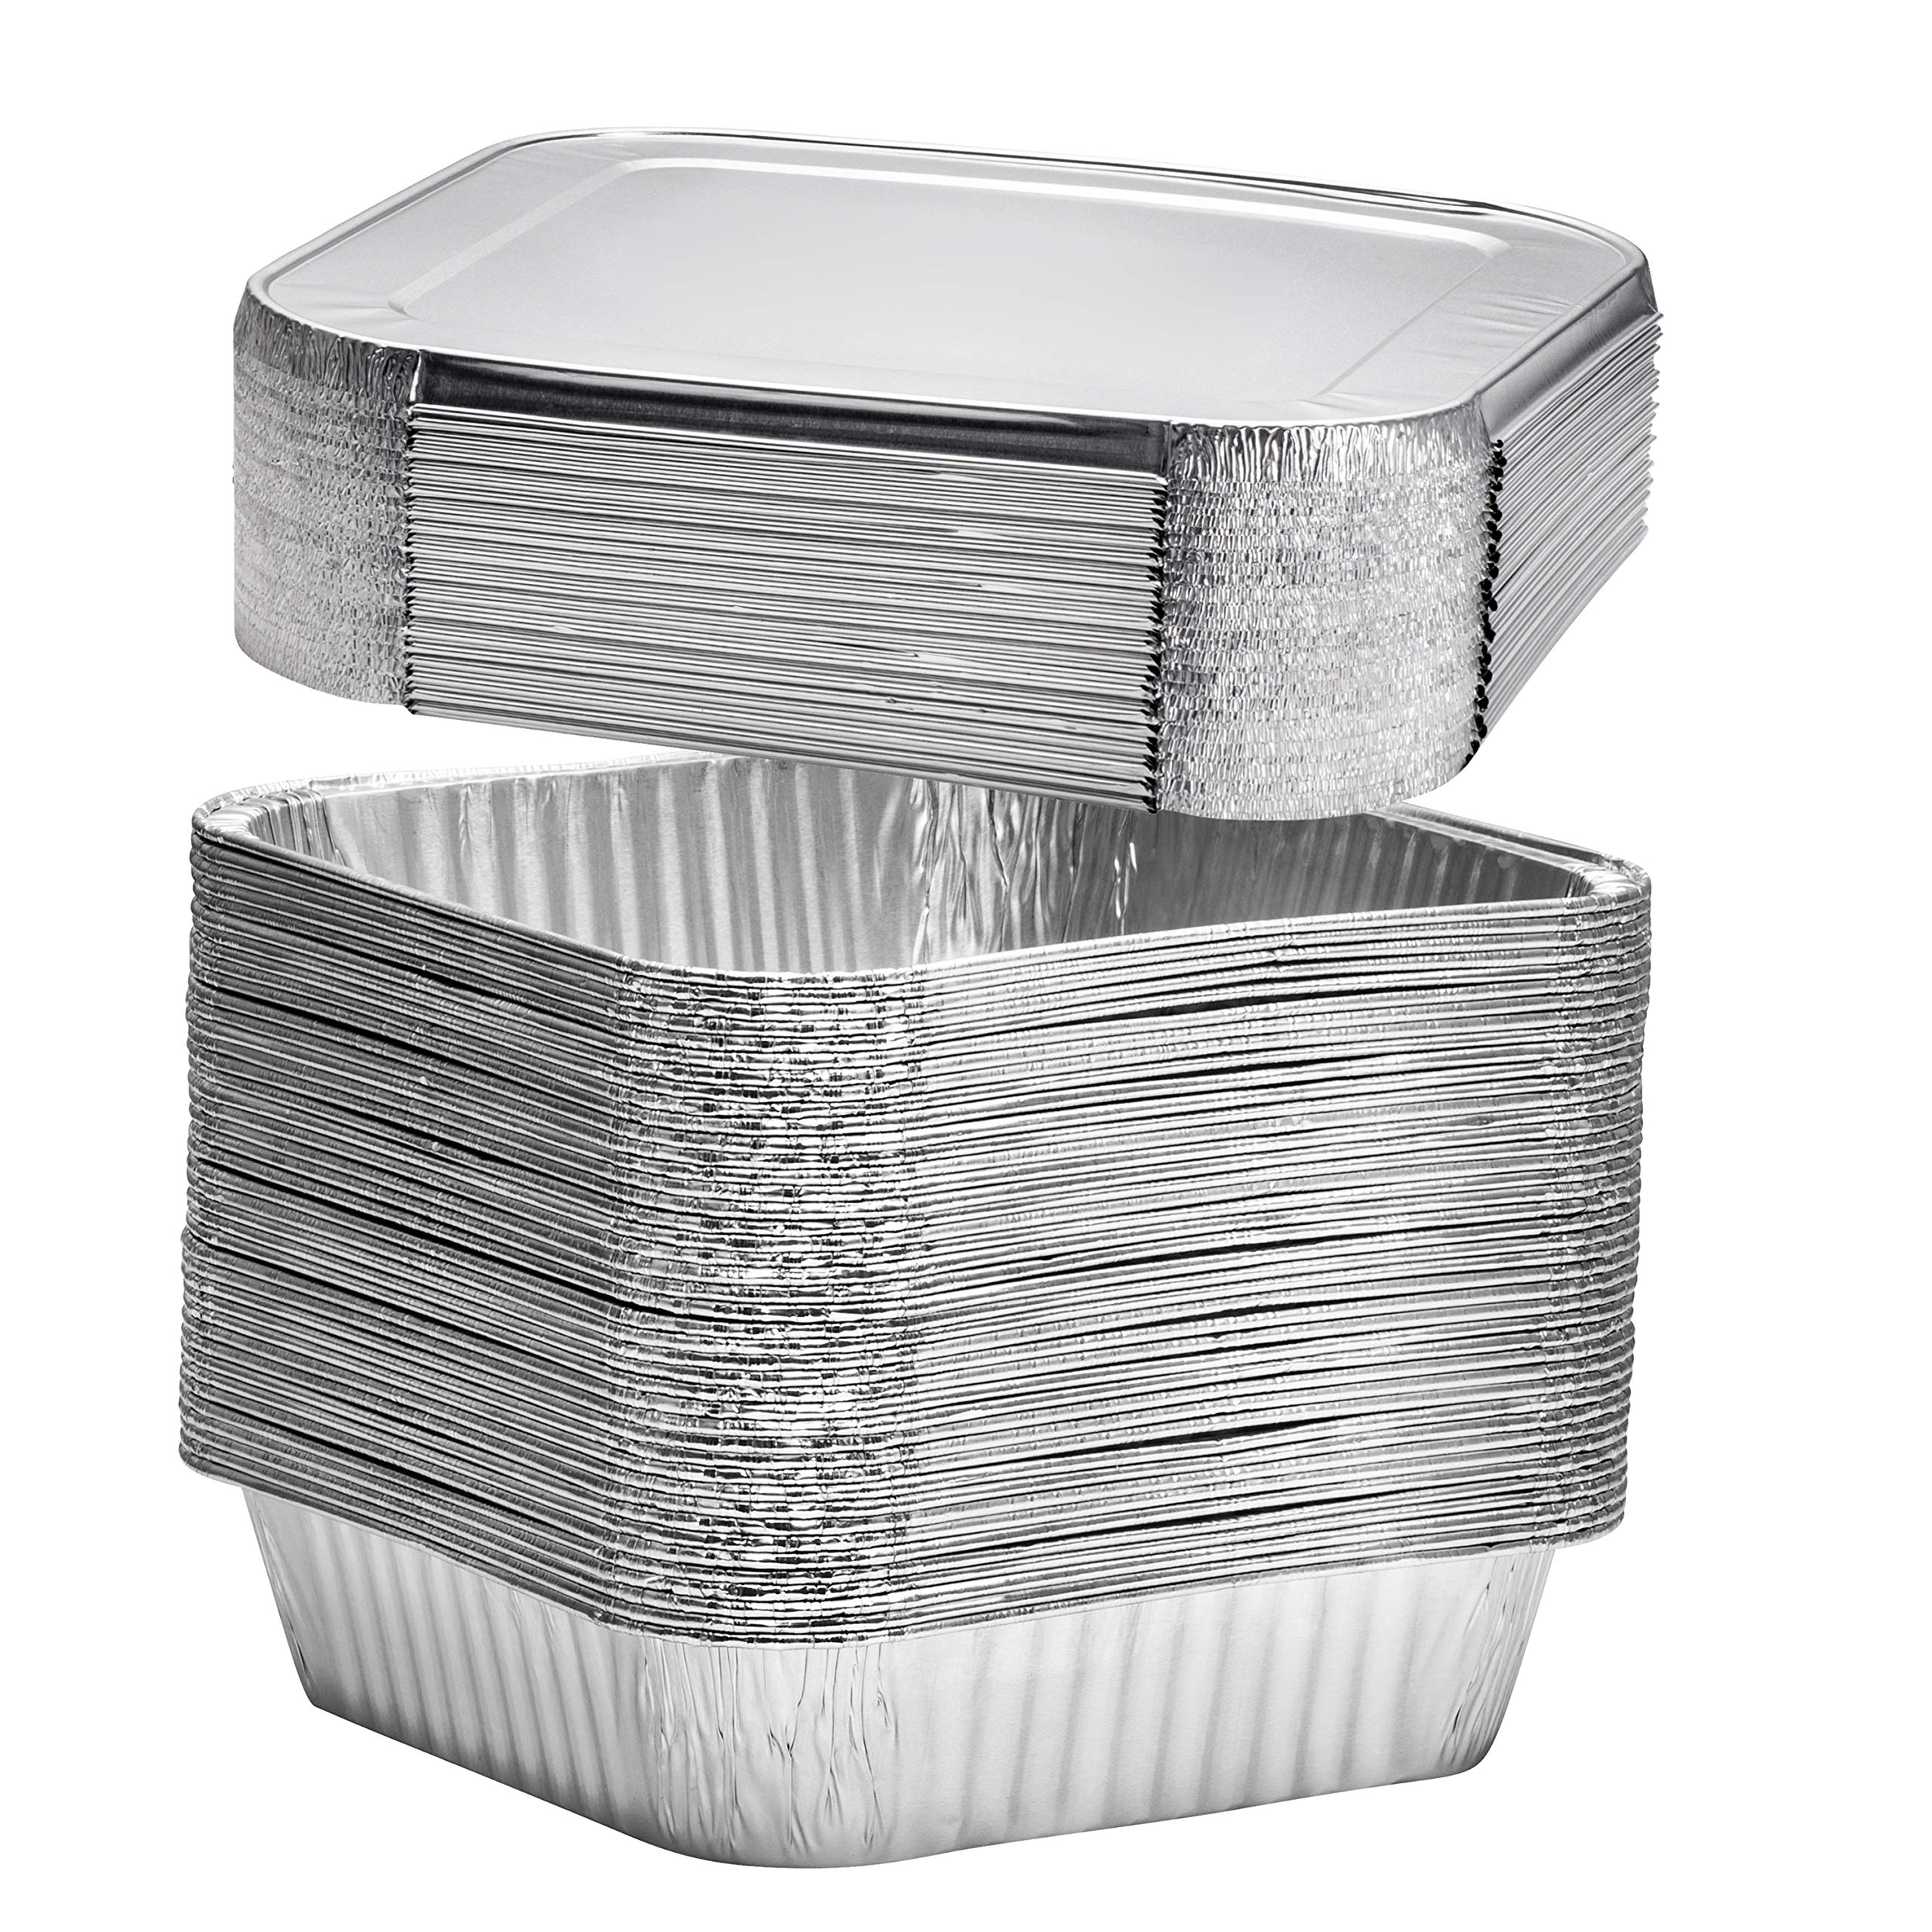 Plastible 8' 方形一次性铝制蛋糕盘 - 铝箔盘非常适合烘焙蛋糕、烘烤、自制面包 | 8 x 8 x 2 英寸